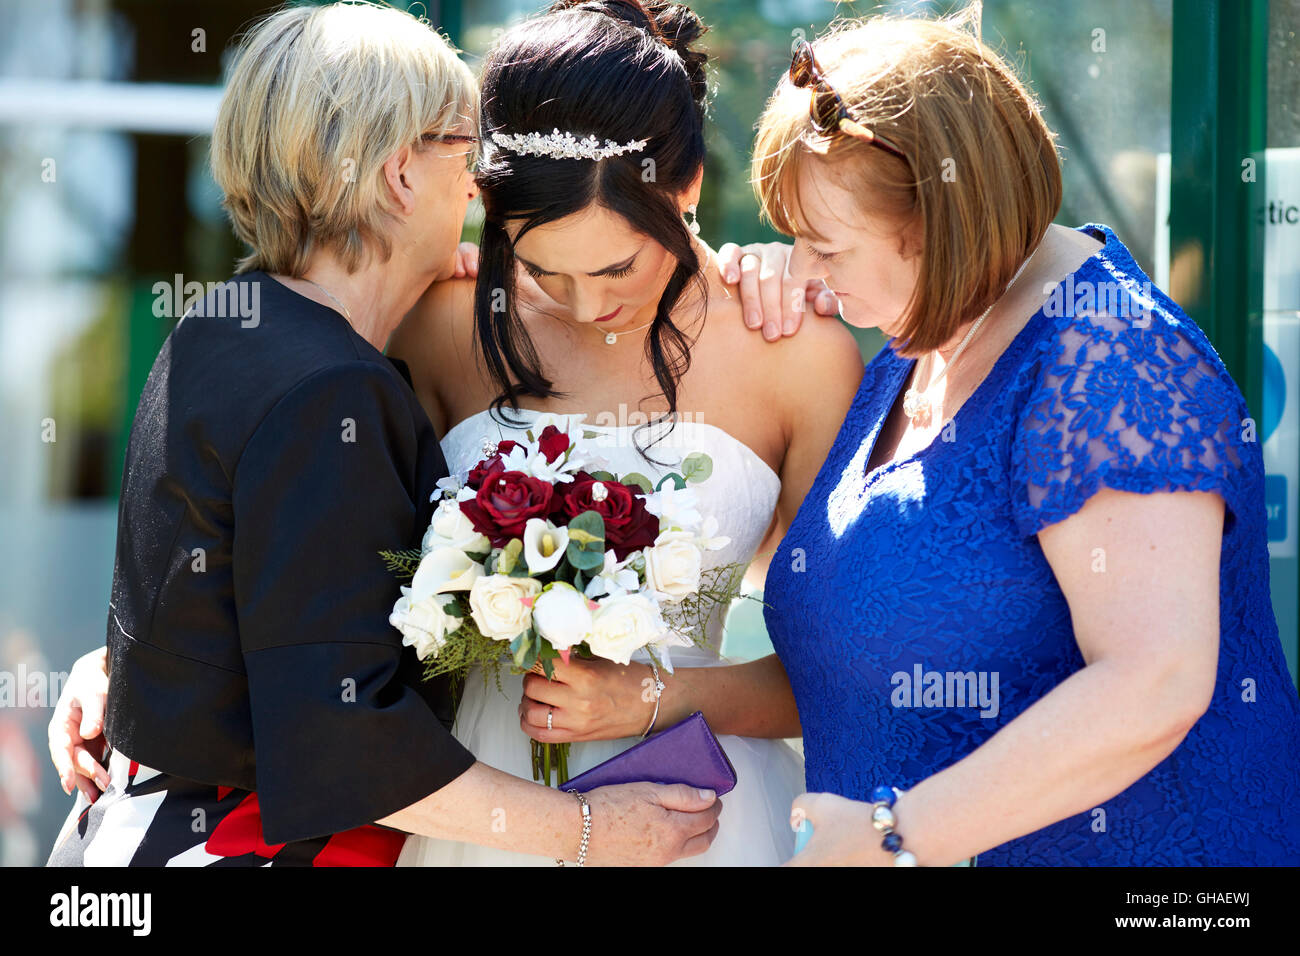 Unhappy bride at wedding Stock Photo